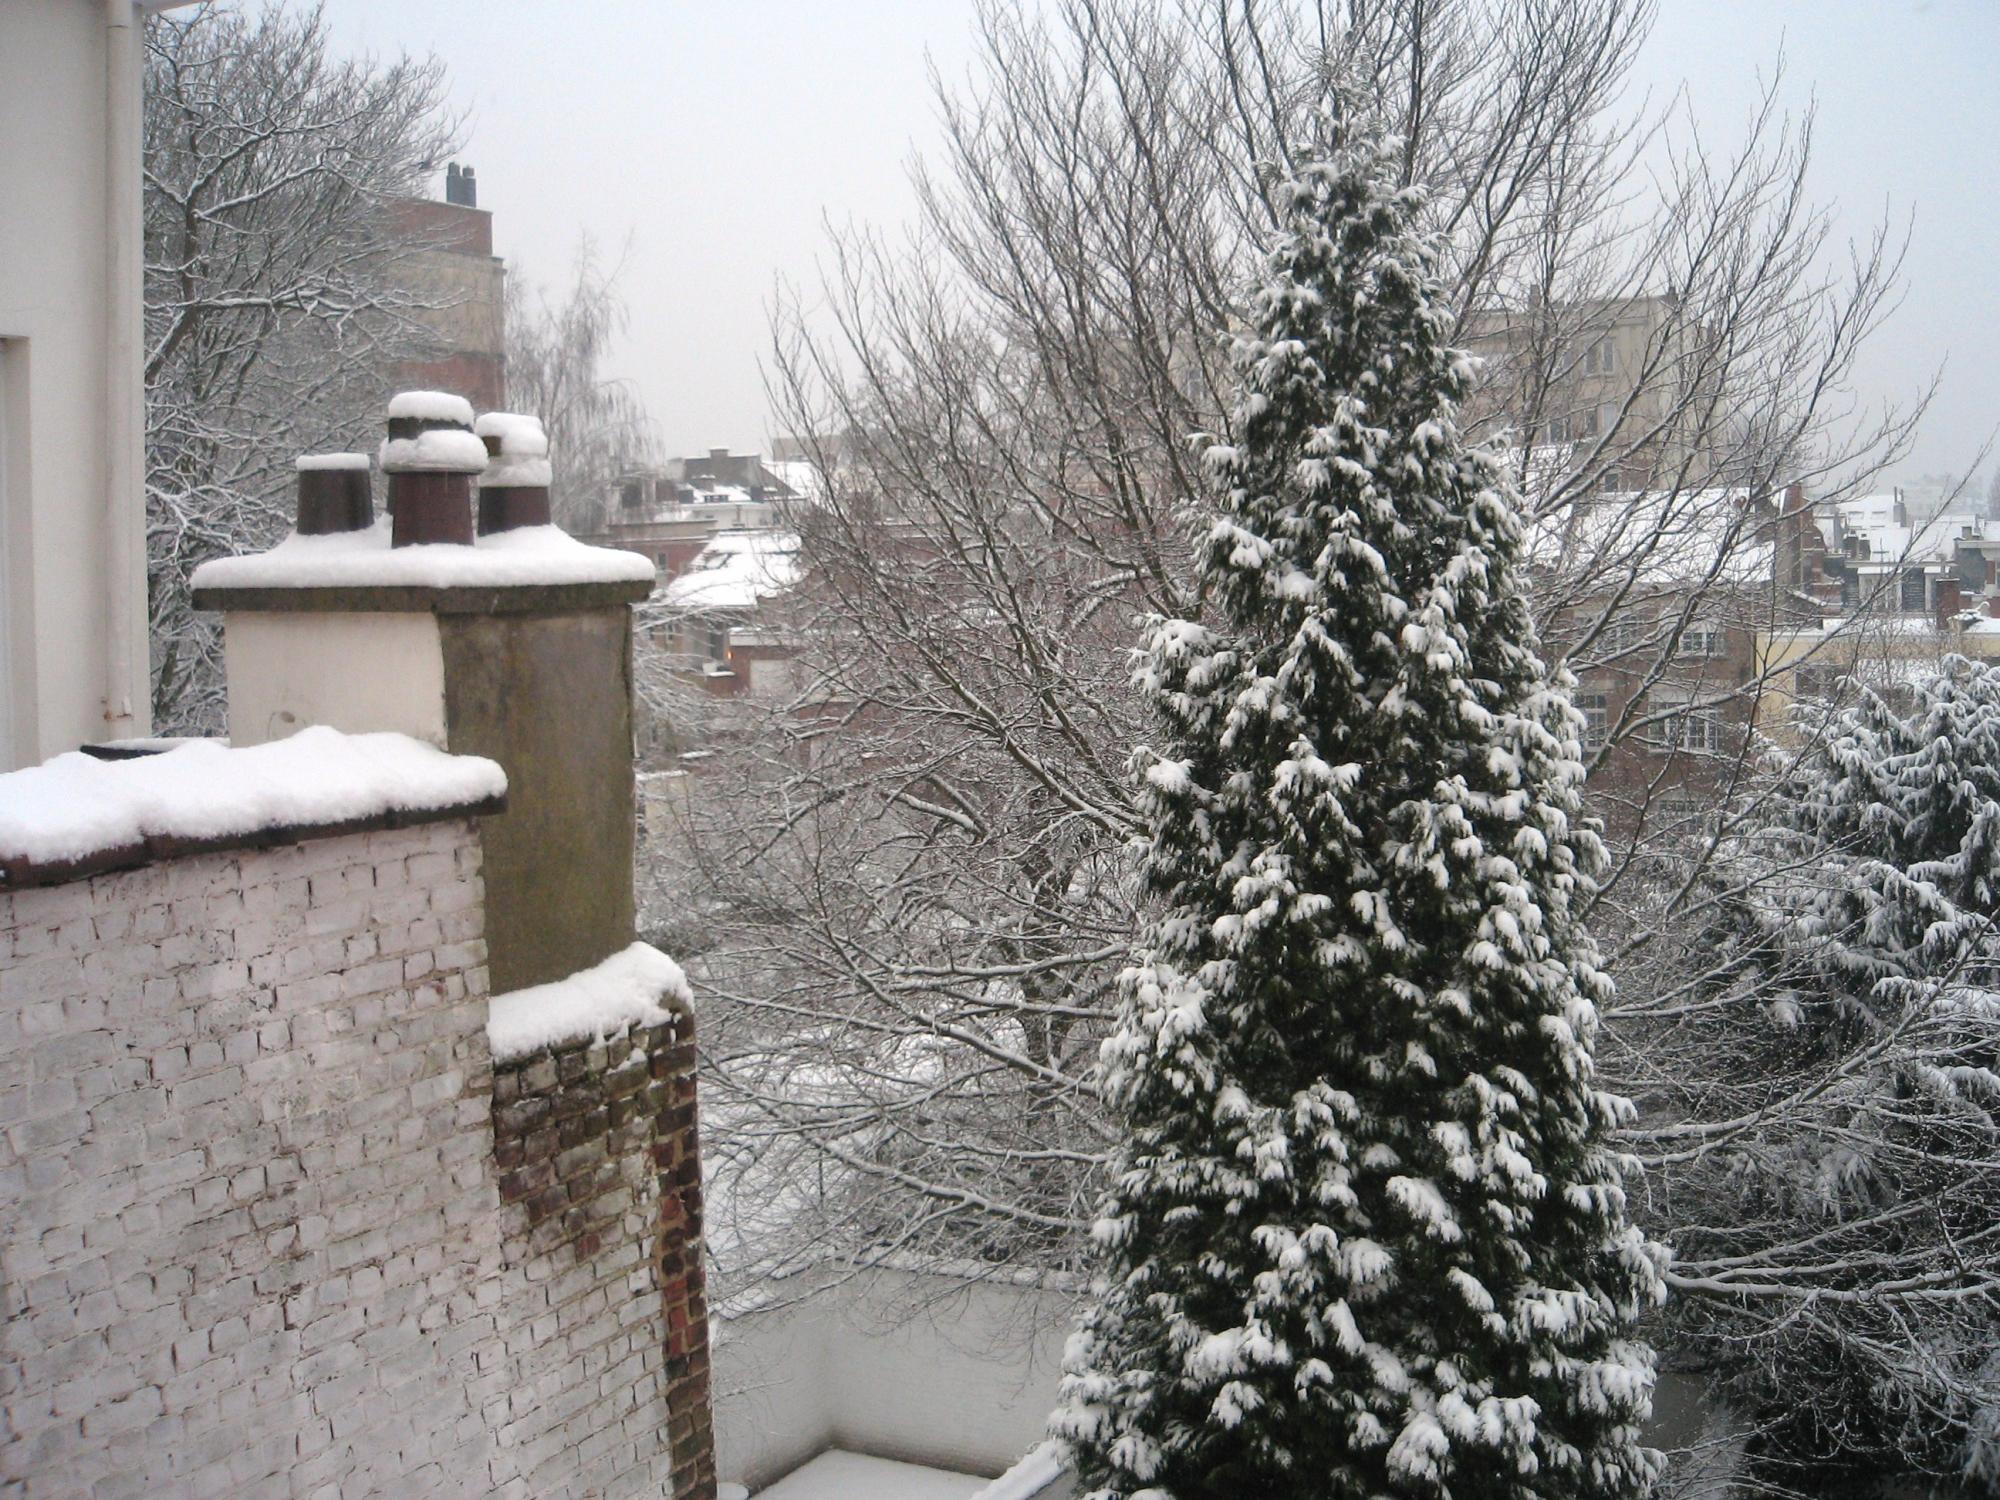 Brussels (2008-2009) - Snowy Backyard View #1